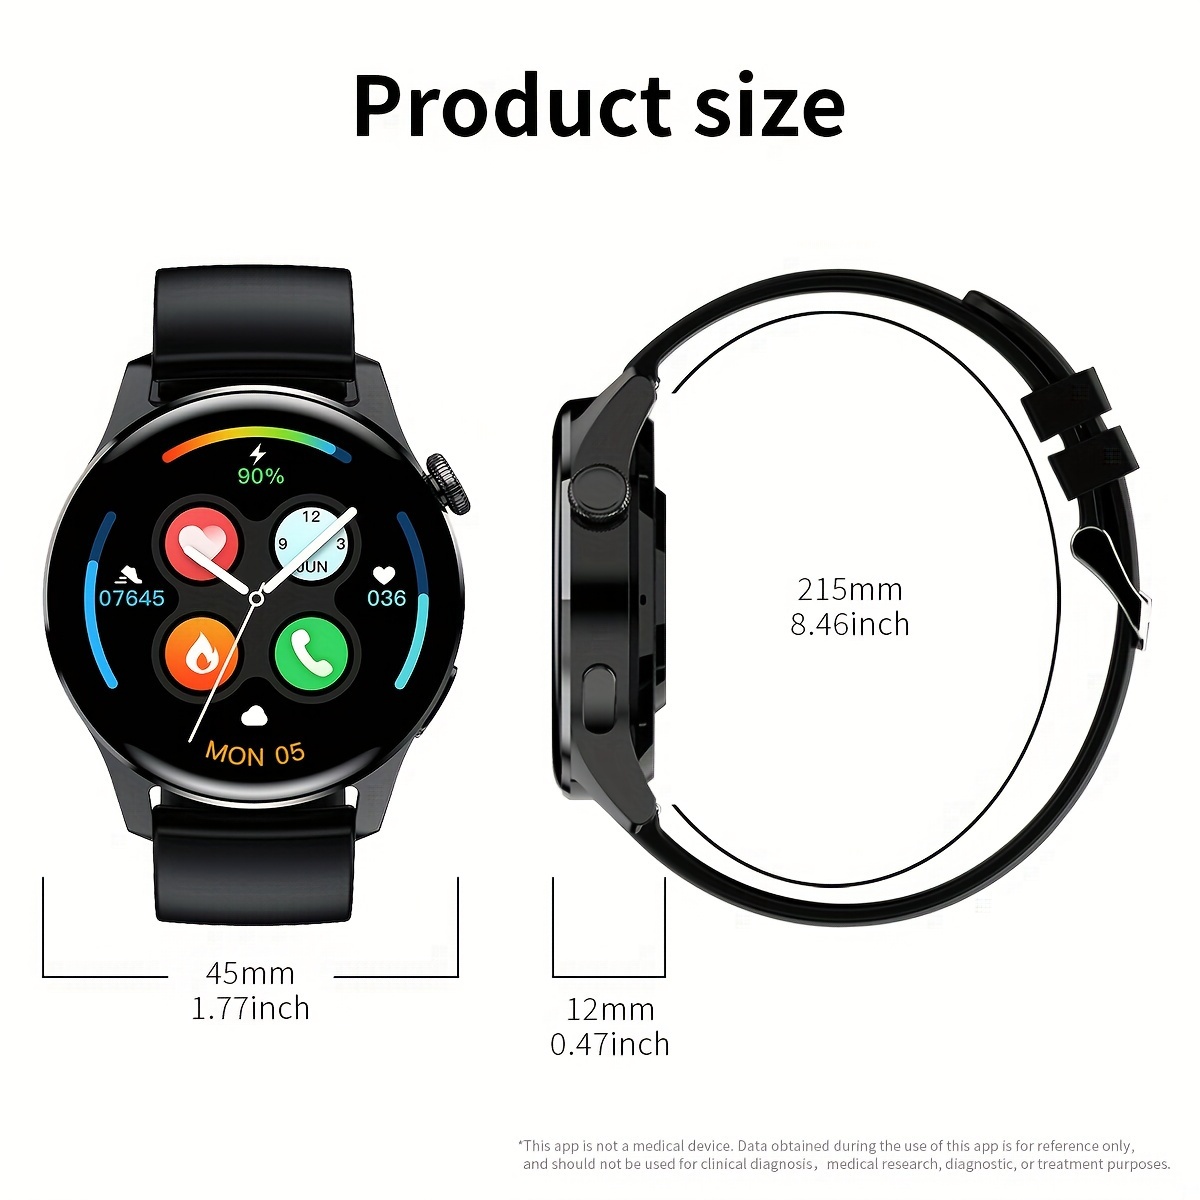 ساعة ذكية (الرد / إجراء مكالمة) ، شاشة عرض ملونة دائرية بقياس 1.28 بوصة مع مقياس الخطى / استهلاك السعرات الحرارية / تسجيل المسار / وقت التمرين / تشغيل الموسيقى / وضعيات رياضية متعددة / ساعات مقاومة للماء لنظامي Android و Iphone